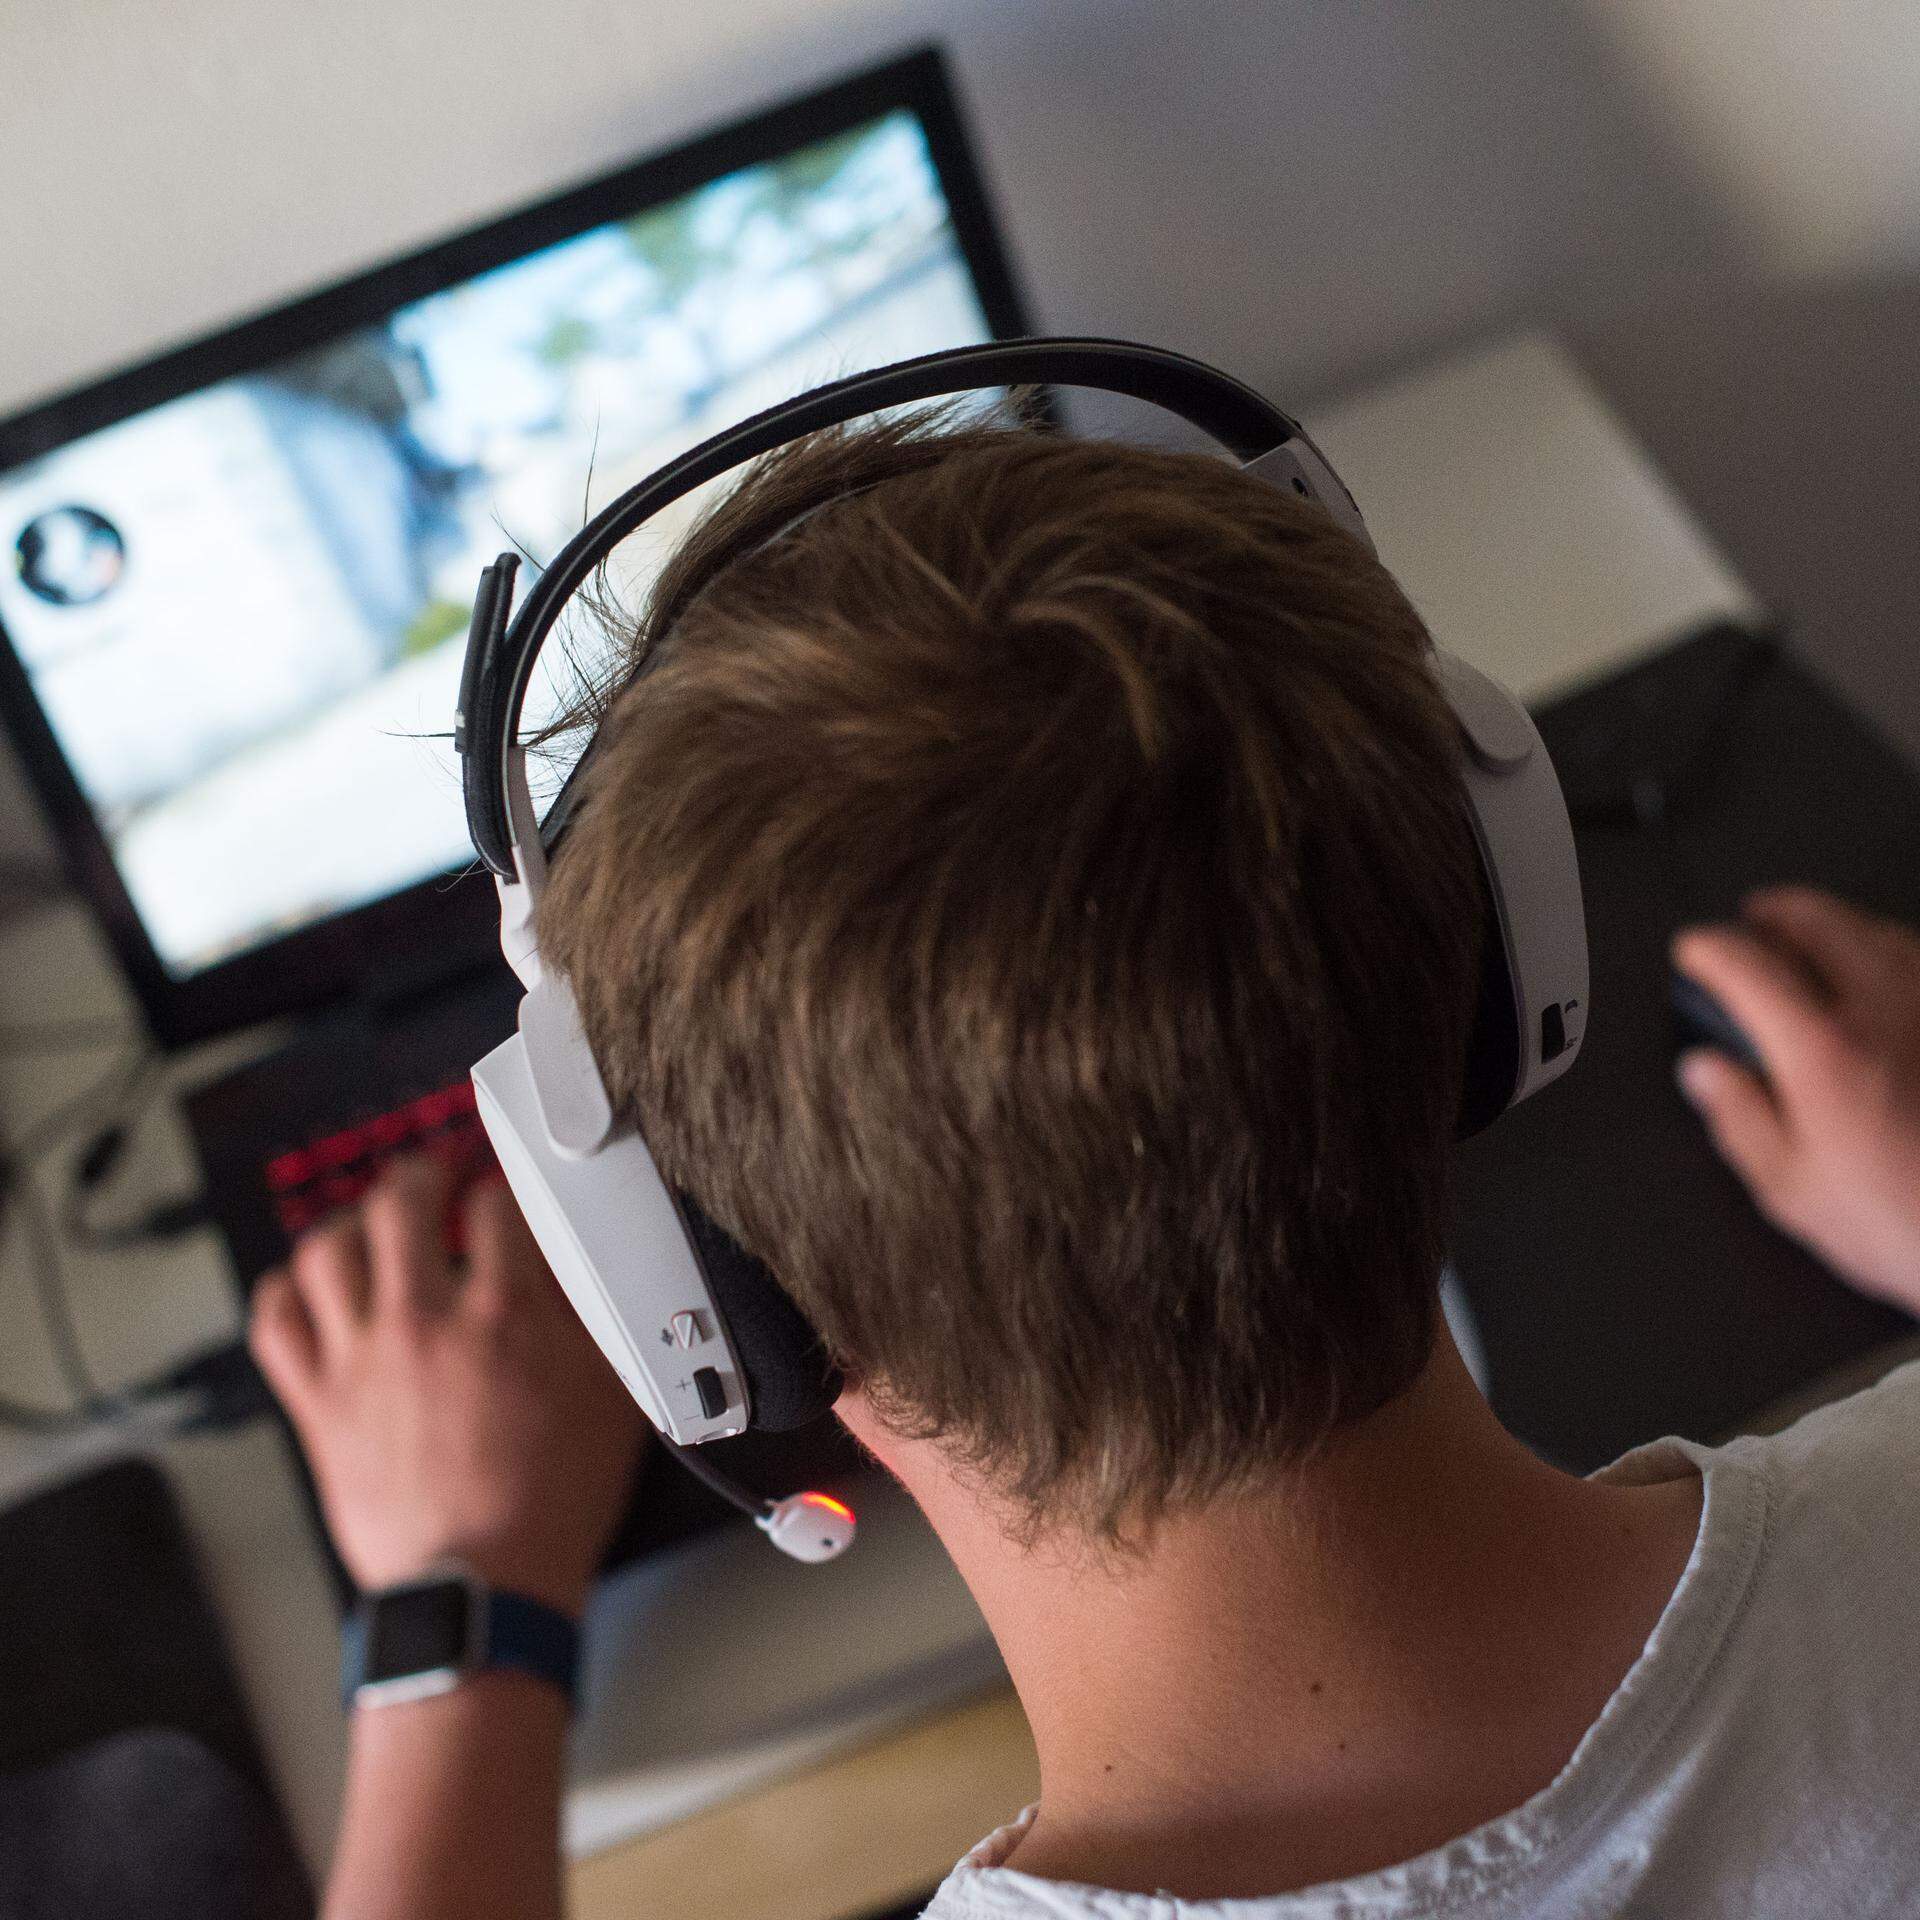 ARCHIV - 17.06.2017, Berlin: Ein Jugendlicher sitzt  mit einem Headset vor einem Laptop und spielt ein Online-Computerspiel. (zu dpa: «Der Ukraine-Krieg als Computerspiel: «Es ist Propaganda»») Foto: Lino Mirgeler/dpa +++ dpa-Bildfunk +++